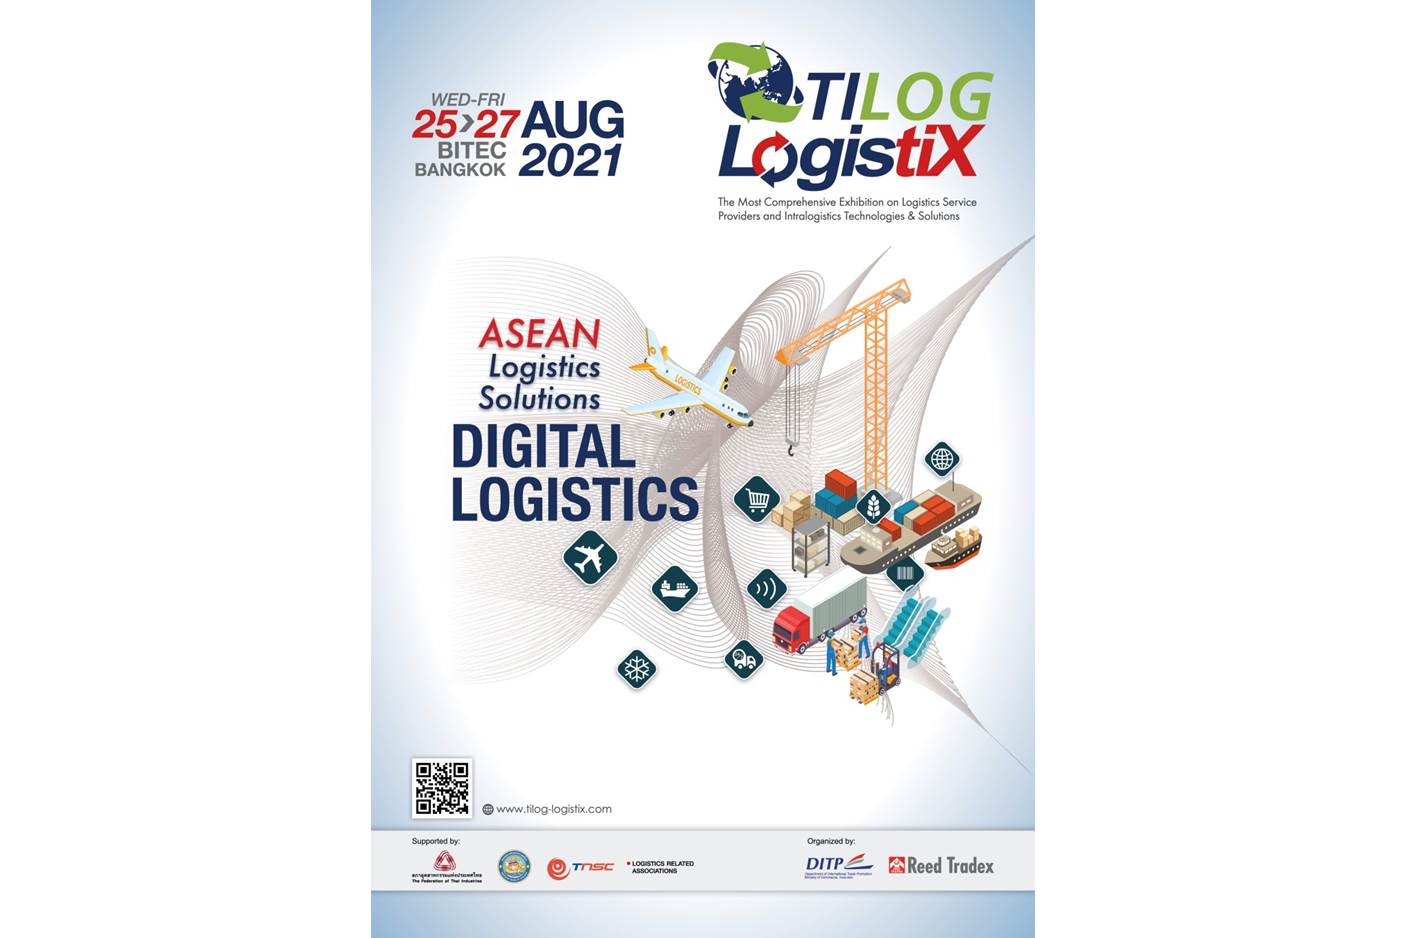 DITP เชิญชวนผู้ประกอบการโลจิสติกส์ เข้าร่วมงานแสดงสินค้า TILOG - LOGISTIX 2021  โชว์นวัตกรรม ขยายเครือข่ายธุรกิจจับคู่ผู้ซื้อทั่วโลก